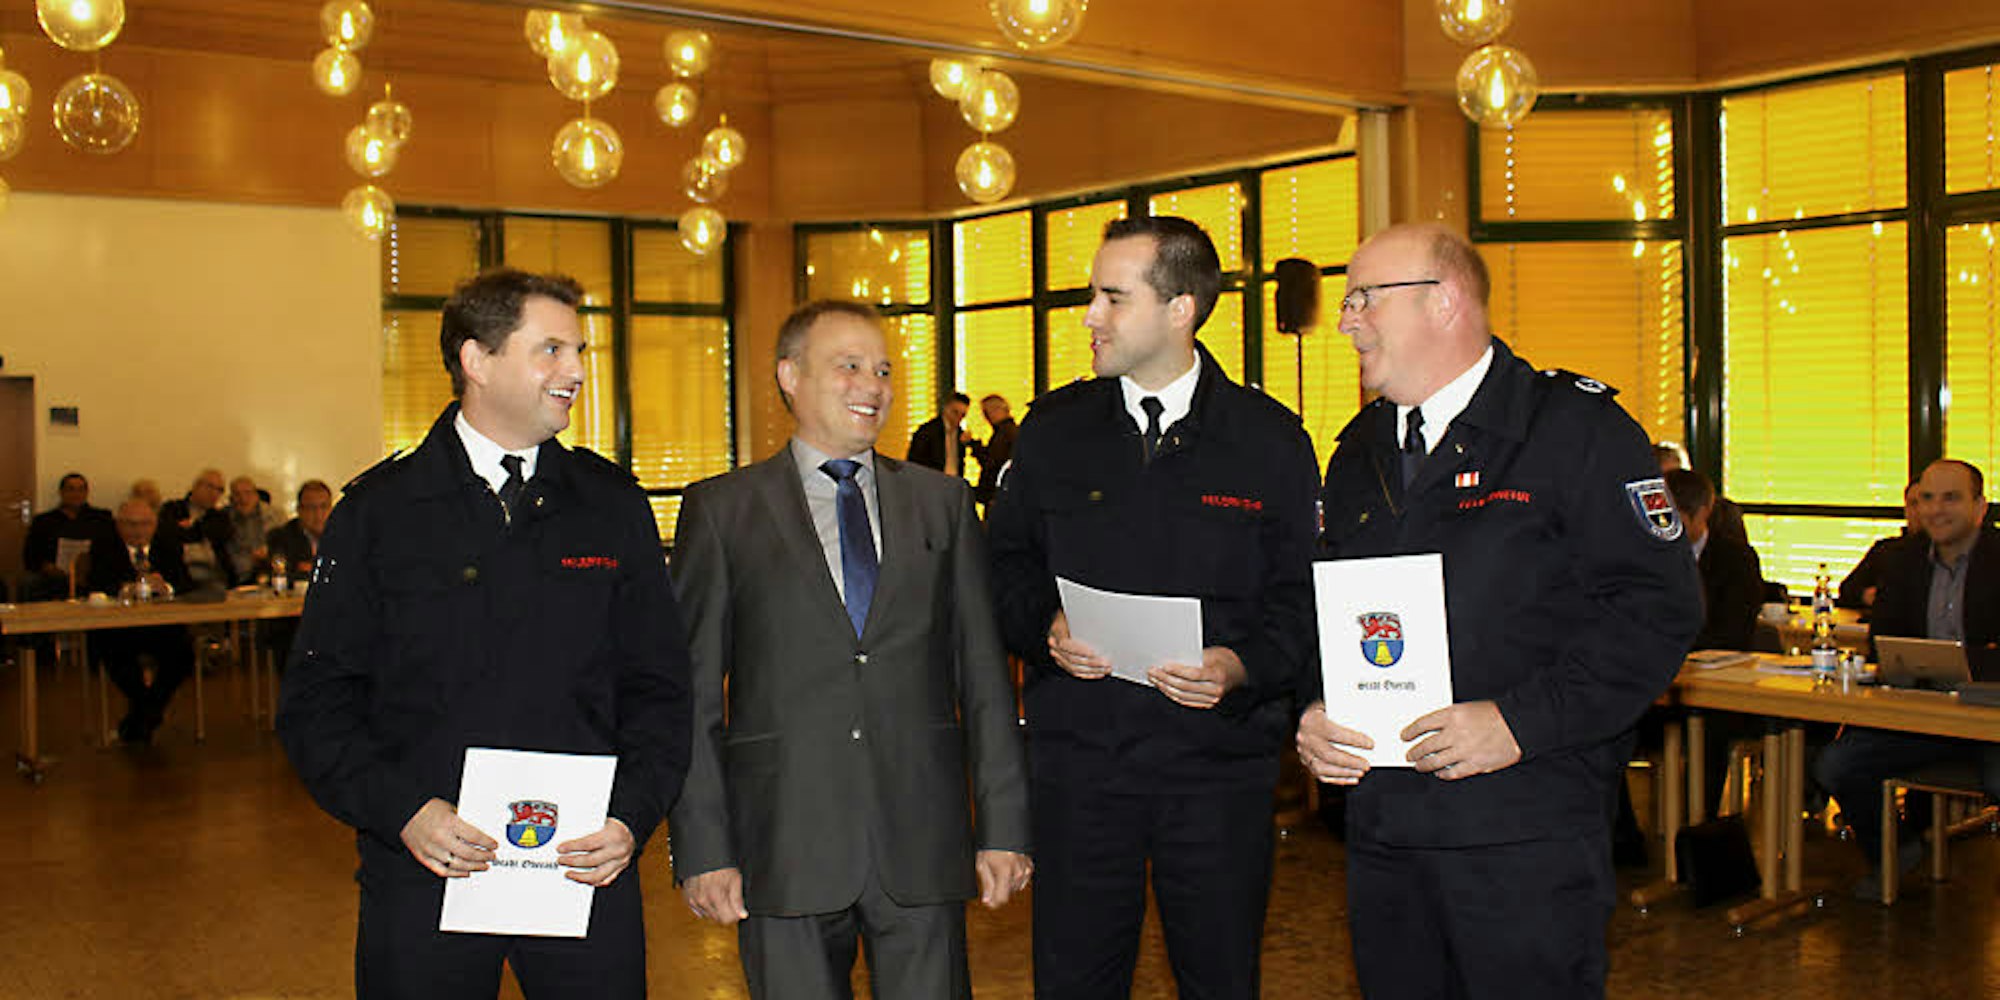 Bürgermeister Jörg Weigt (2. v. l.) überreichte die Ernennungsurkunden an Heiko Schmitt, Simon Spanier und Willi Schmitz (v. l.).